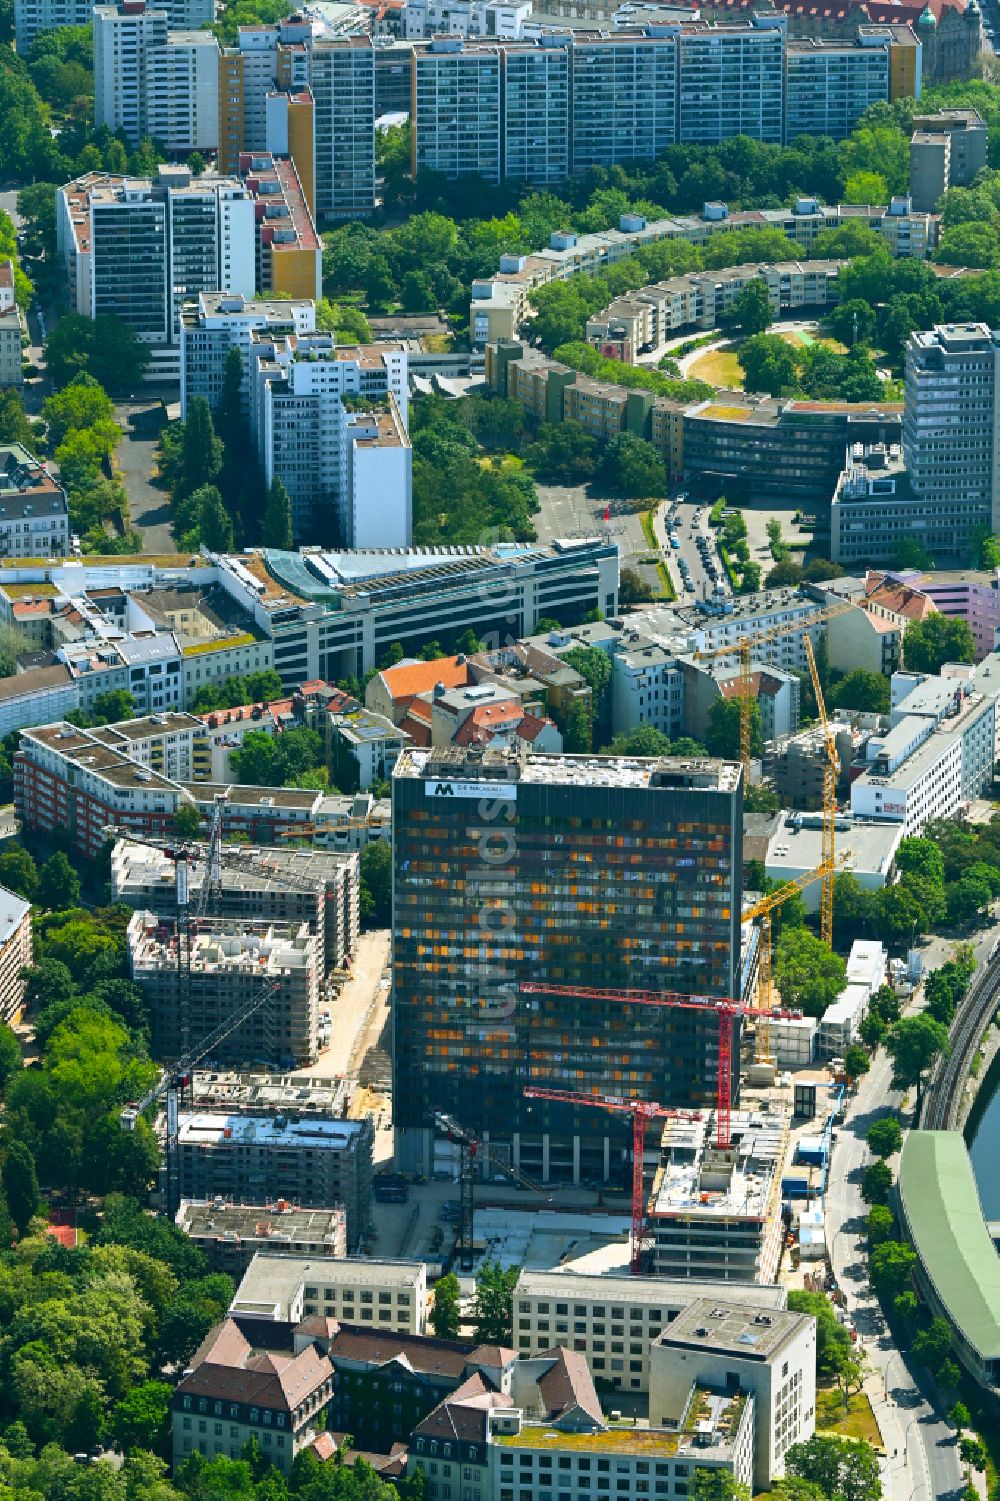 Luftbild Berlin - Umbau und Sanierung des Hochhaus- Gebäude auf dem Postscheckamt-Areal im Ortsteil Kreuzberg in Berlin, Deutschland